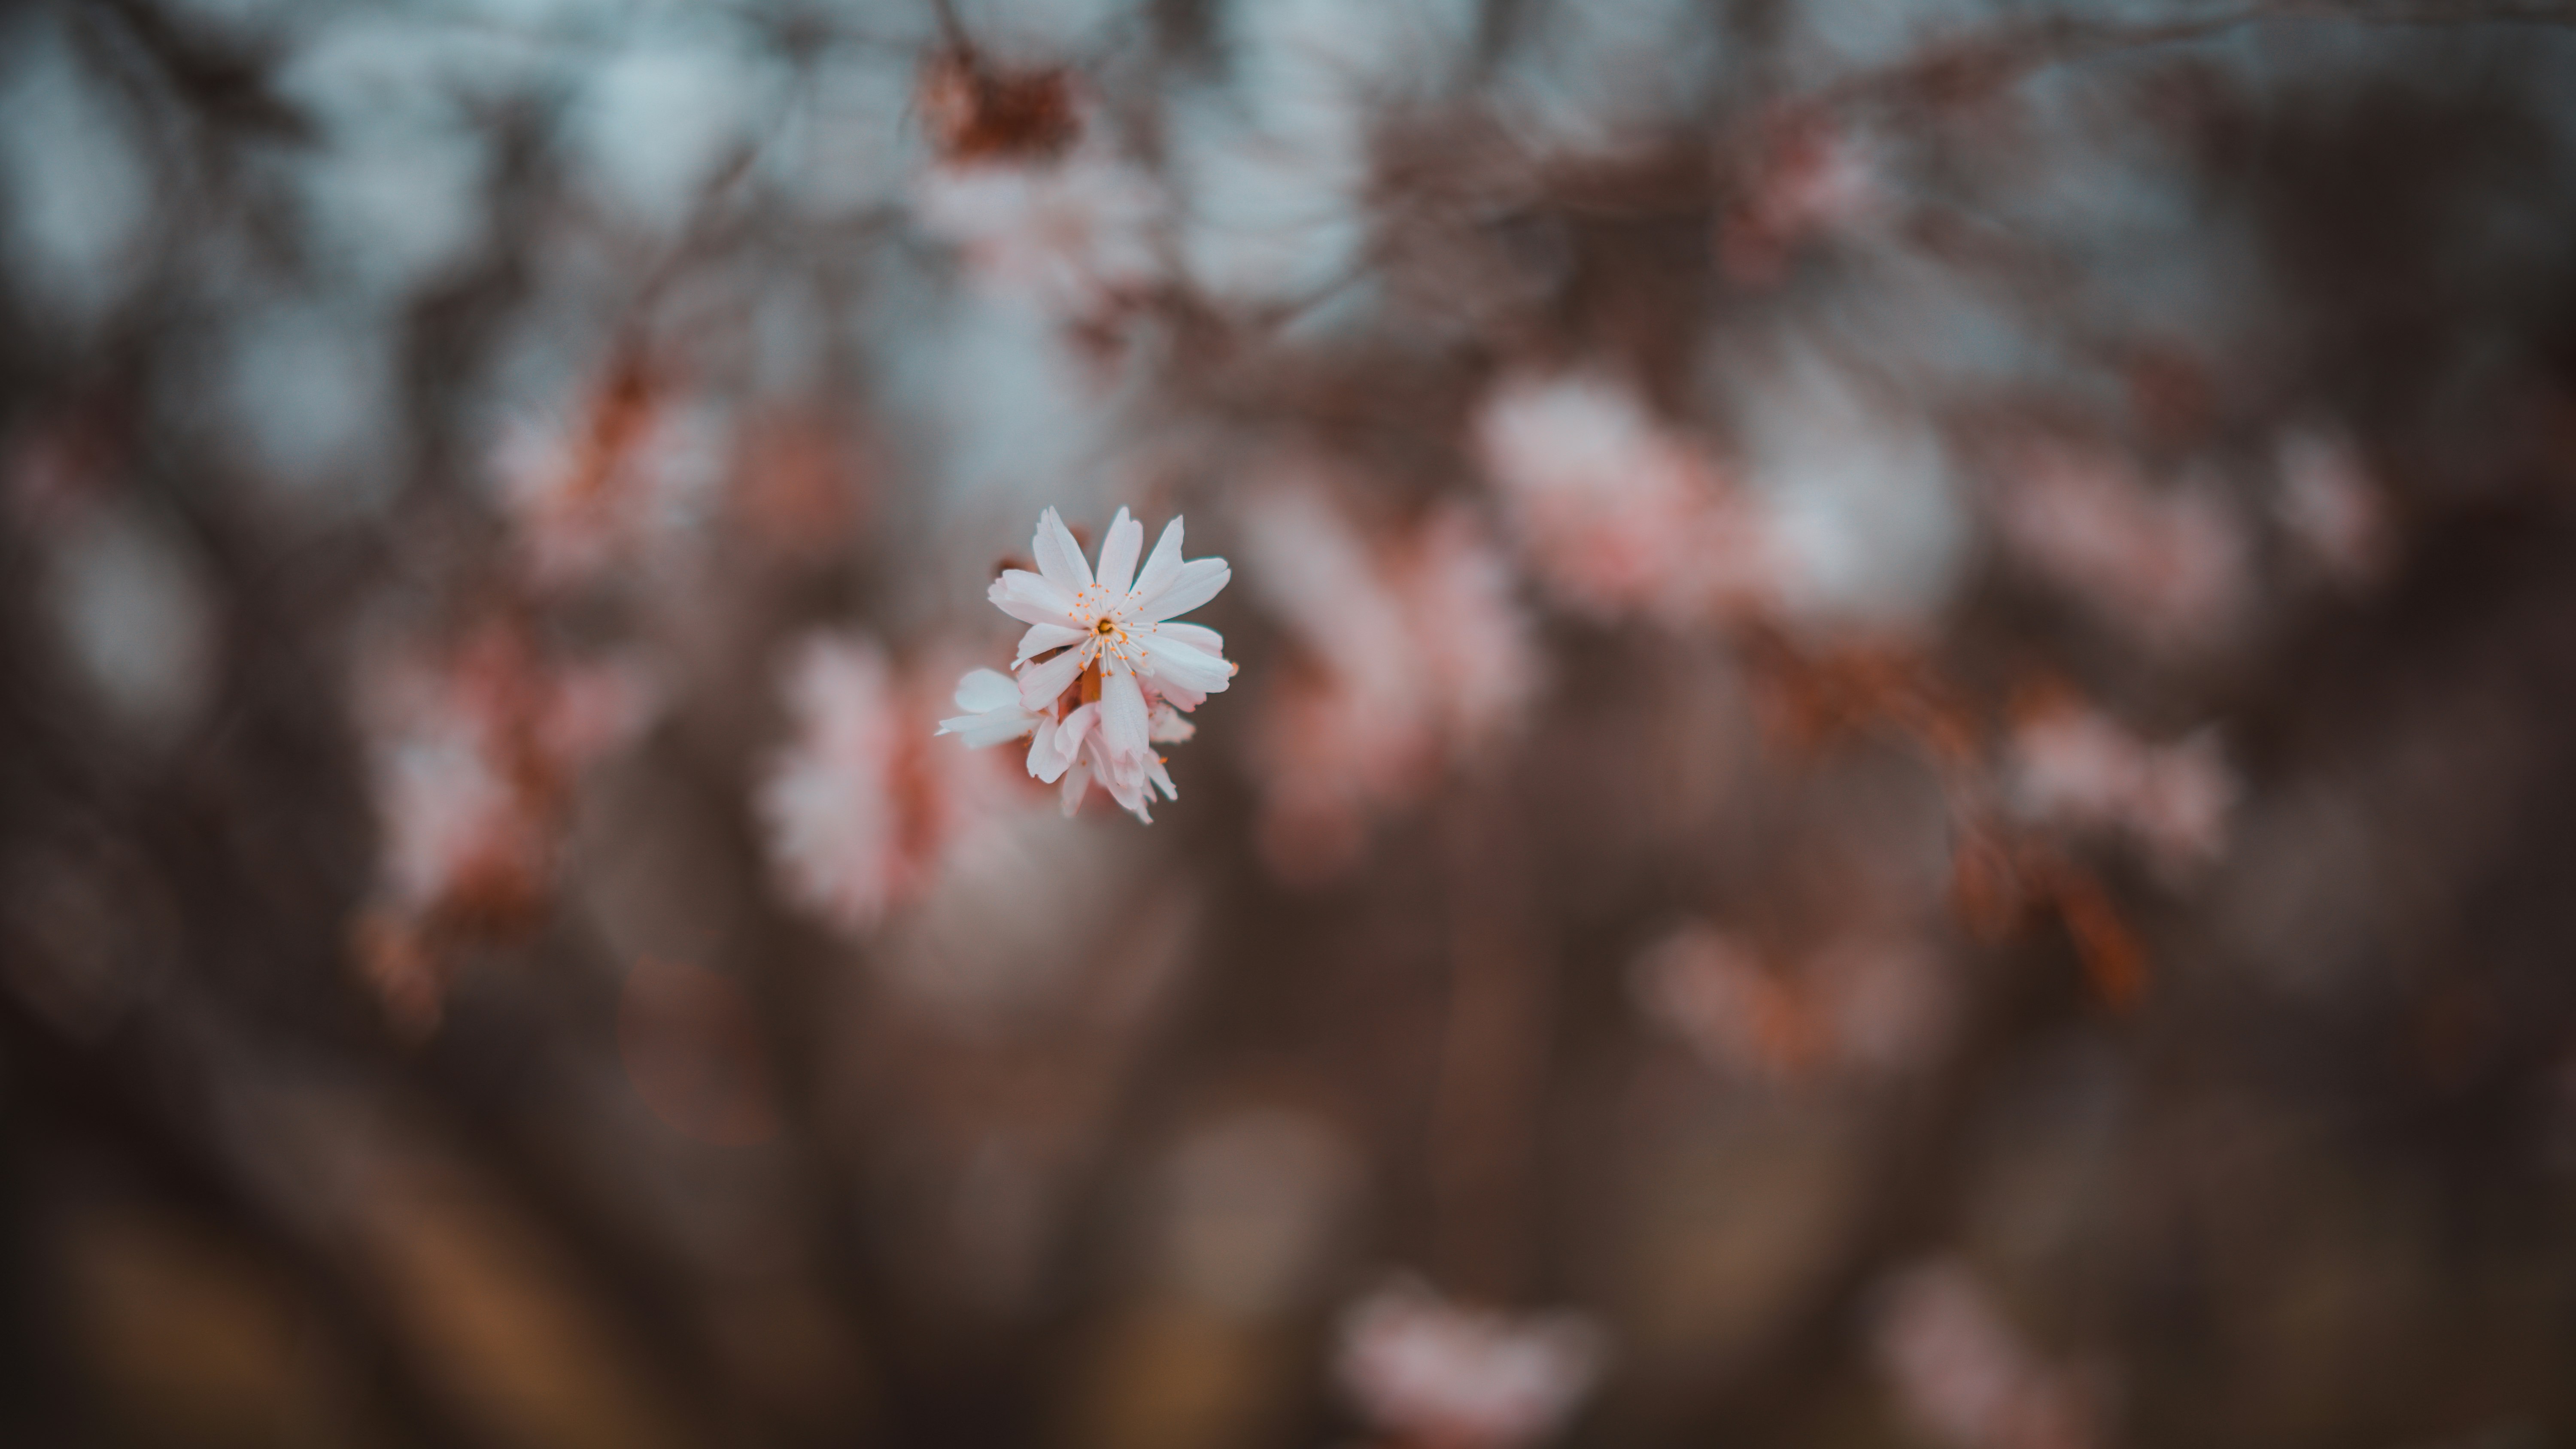 white and pink flower in tilt shift lens